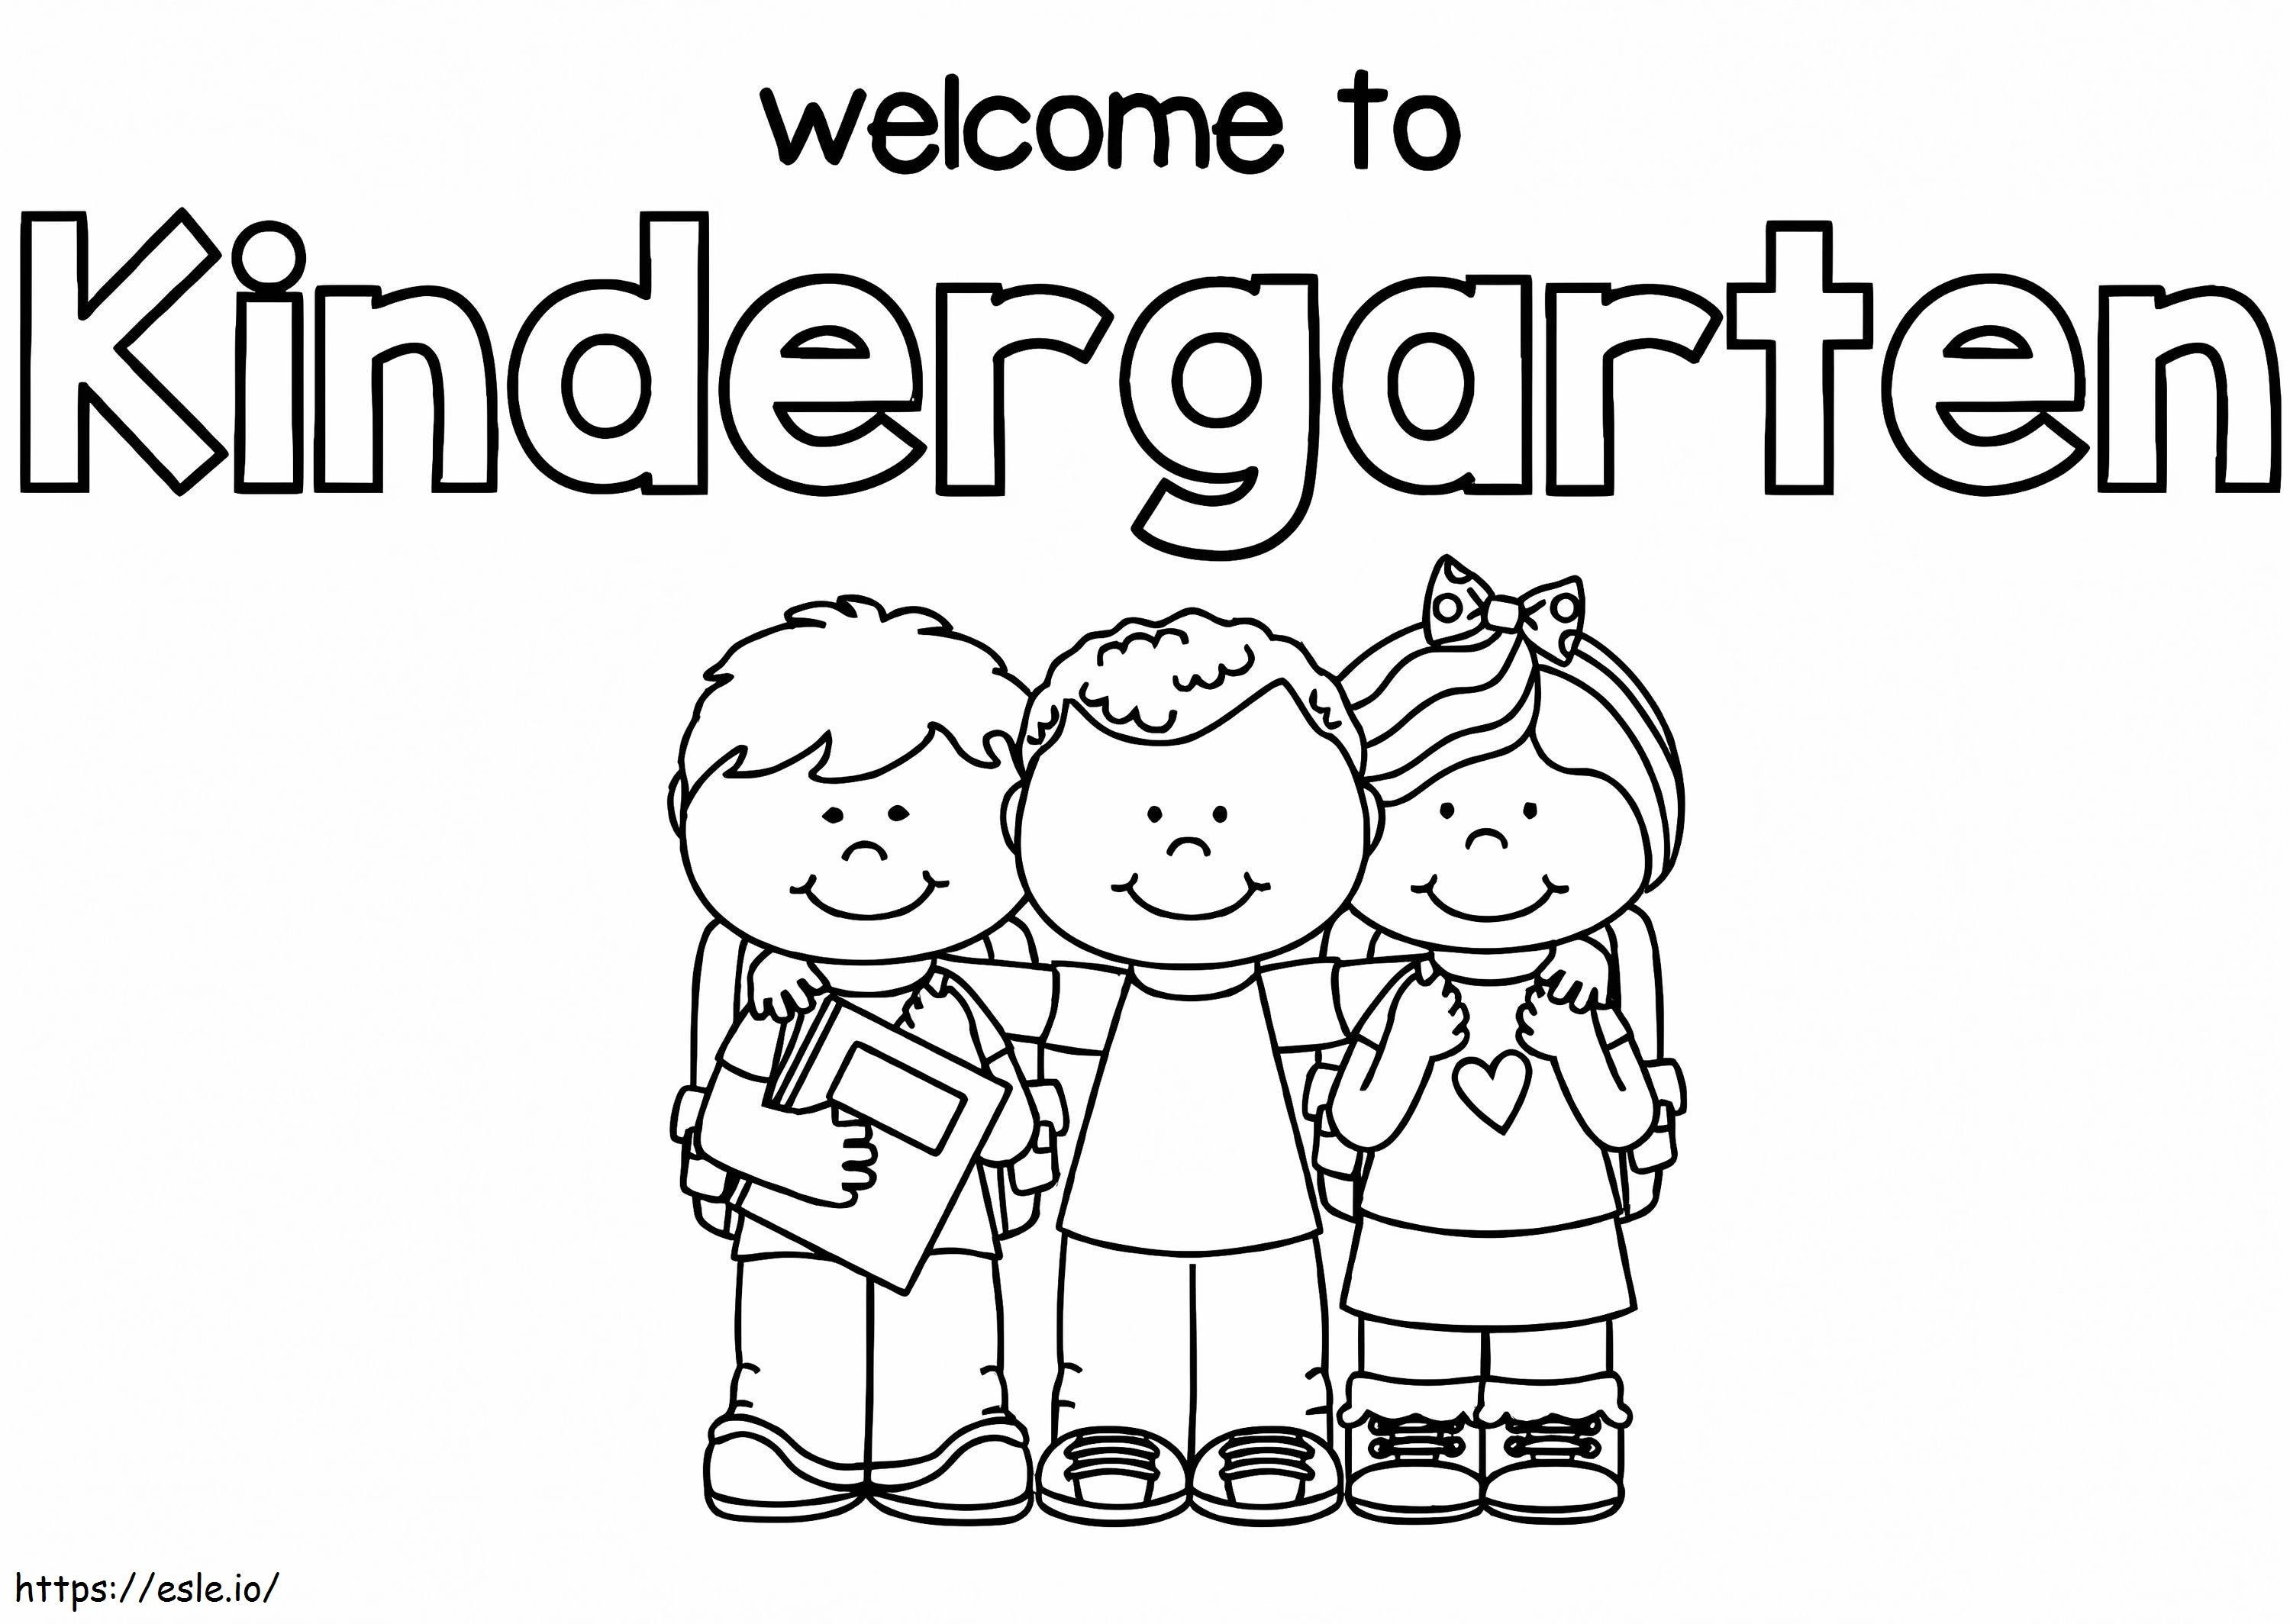 Willkommen im Kindergarten 1 ausmalbilder